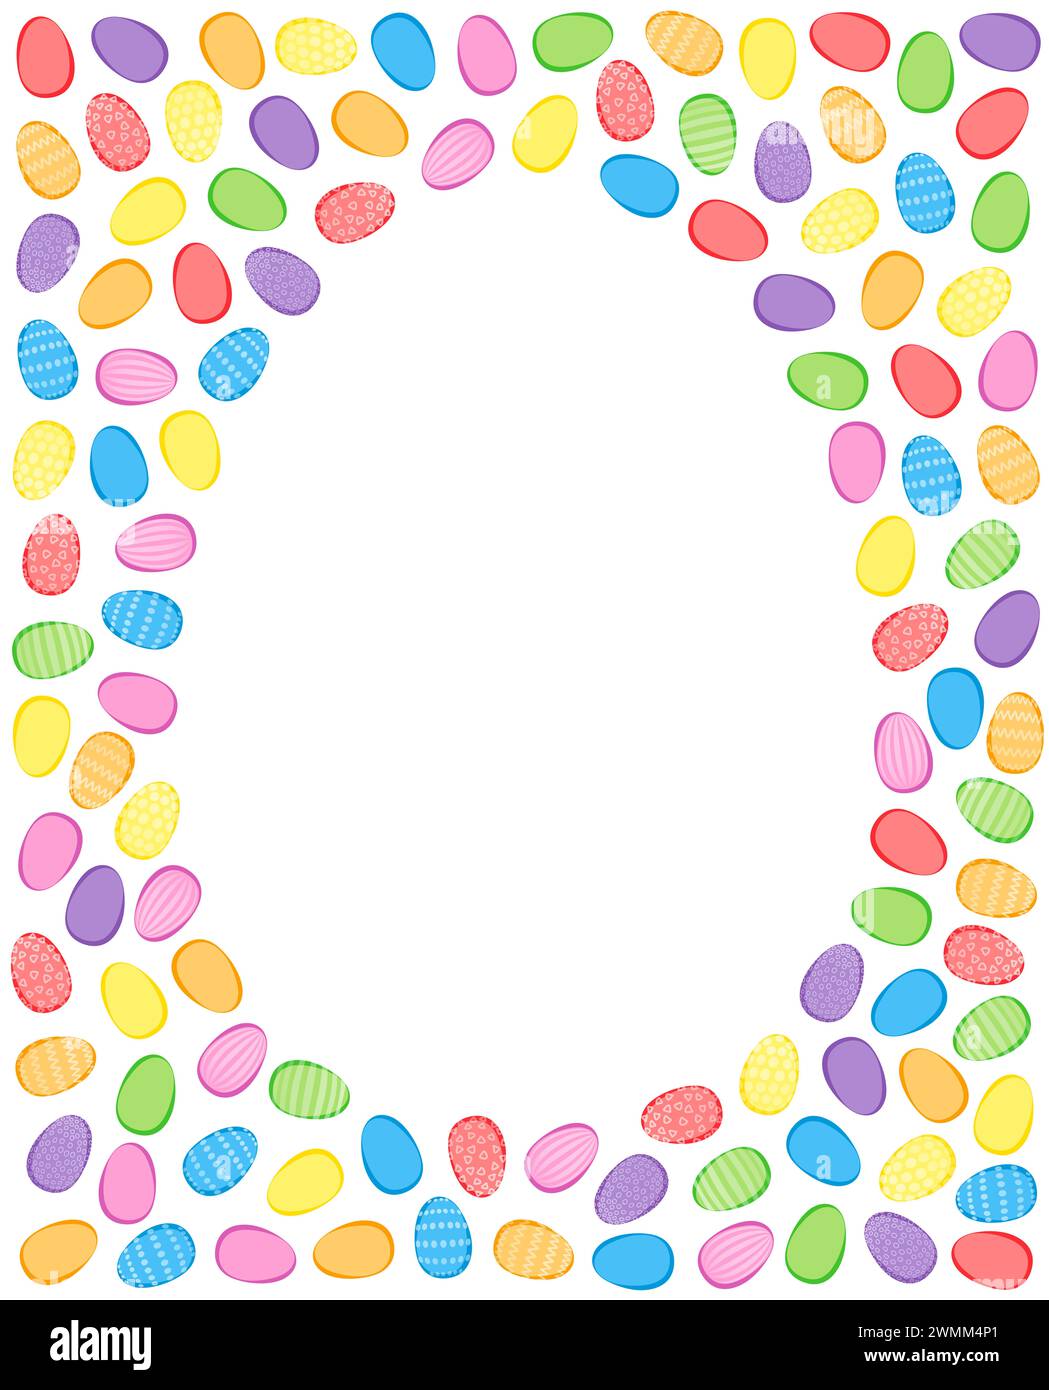 Fond coloré d'oeuf de Pâques. Nombreux œufs de pâques, colorés et décoratifs, entrecroisés et disposés aléatoirement autour de la forme d'oeufs vides. Banque D'Images